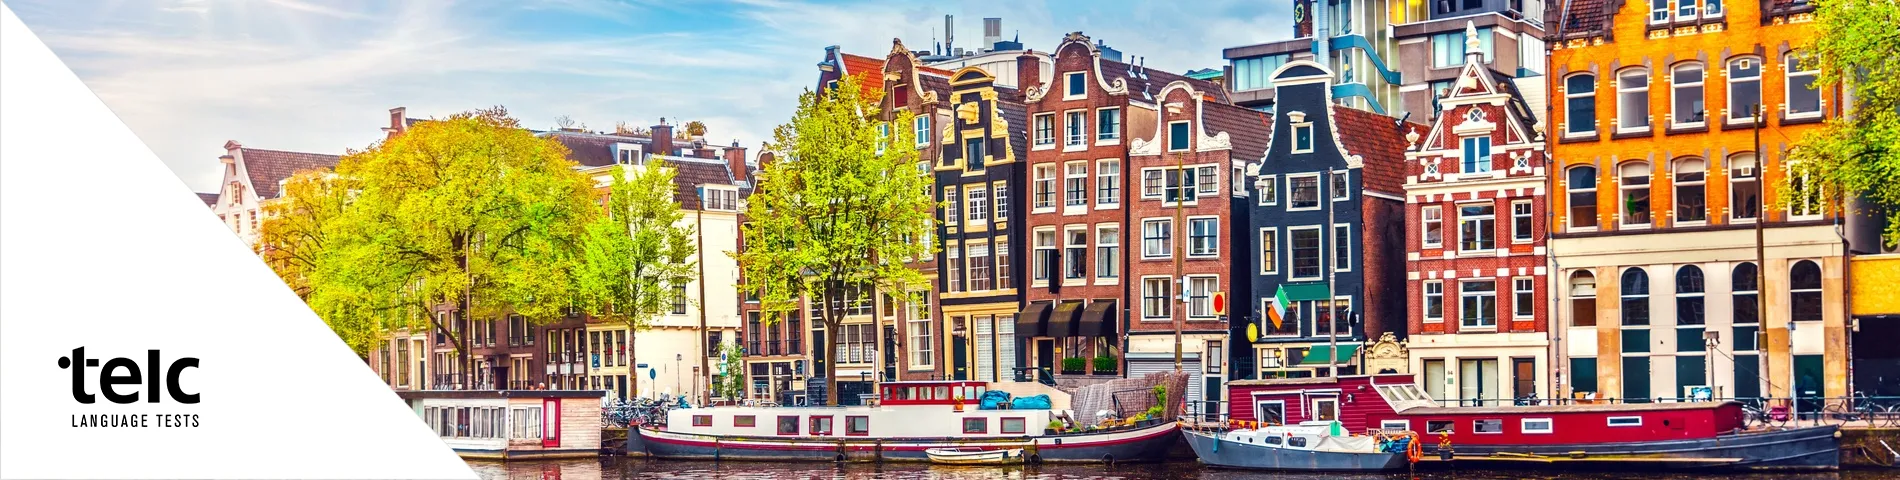 阿姆斯特丹 - 欧洲语言证书（TELC）